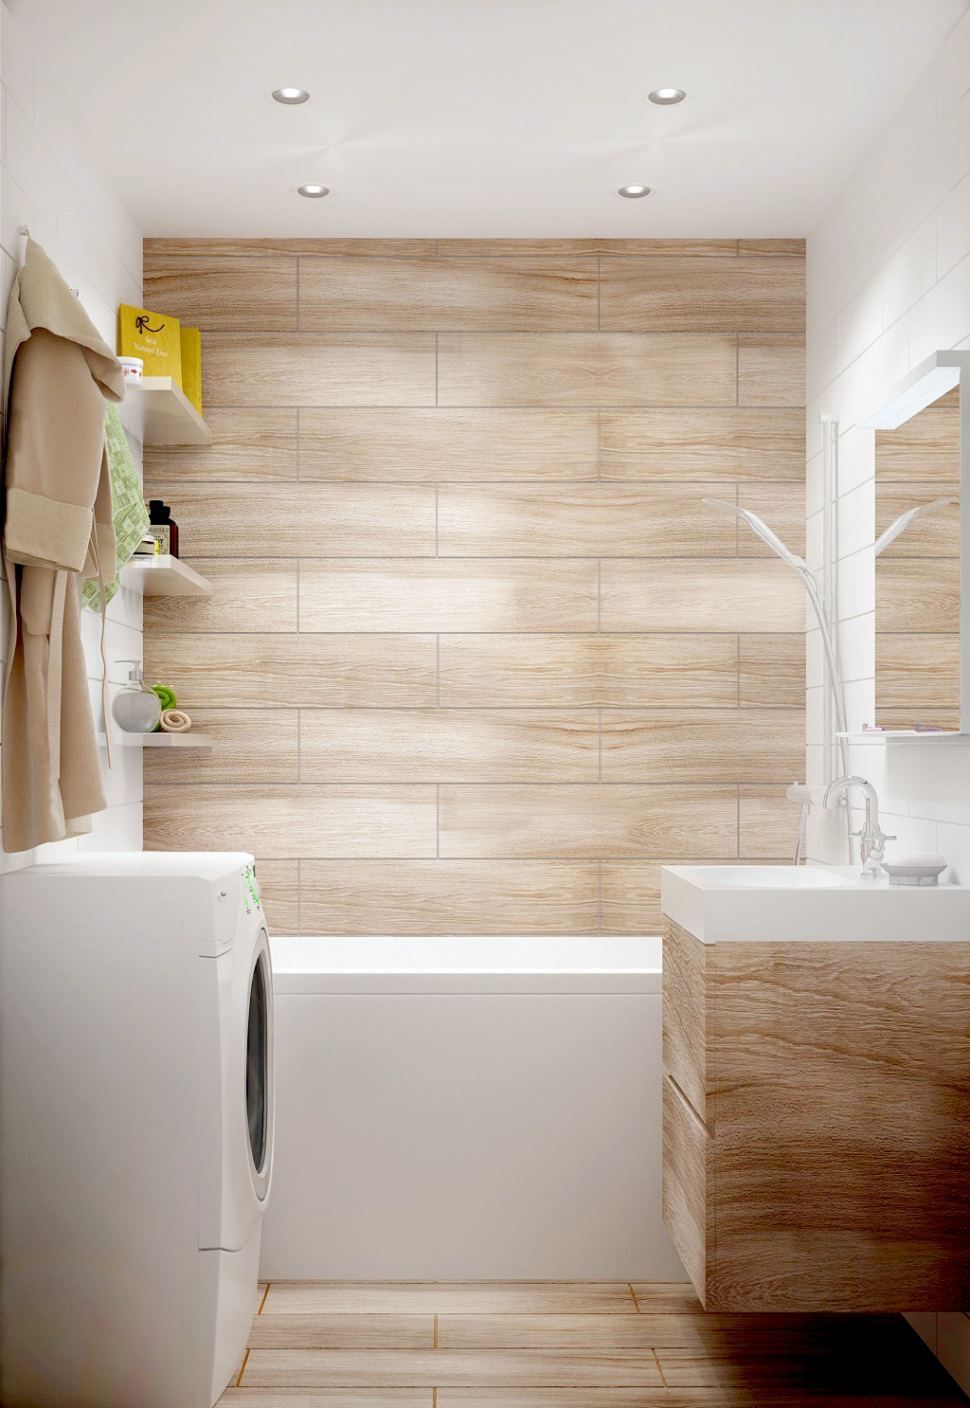 Дизайн-проект ванной комнаты 3 кв.м в светлых тонах, керамическая плитка под дерево, стиральная машина, полки, мойка, зеркало, ванна